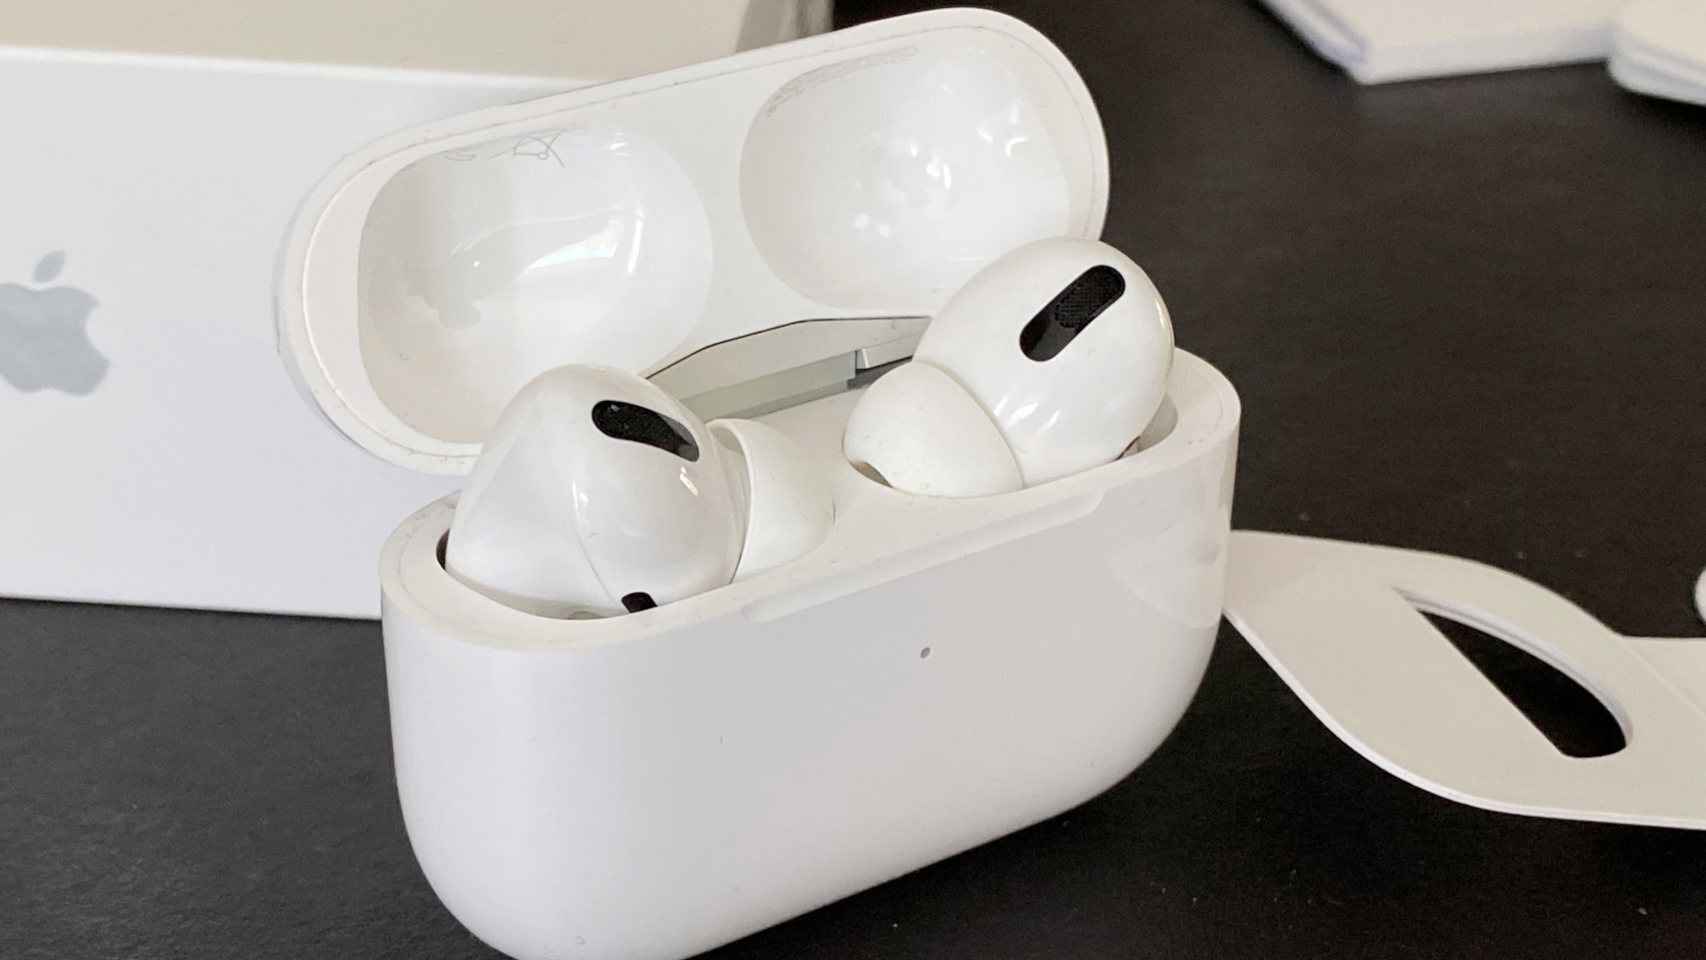 Apple está preparando unos AirPods más pequeños y baratos